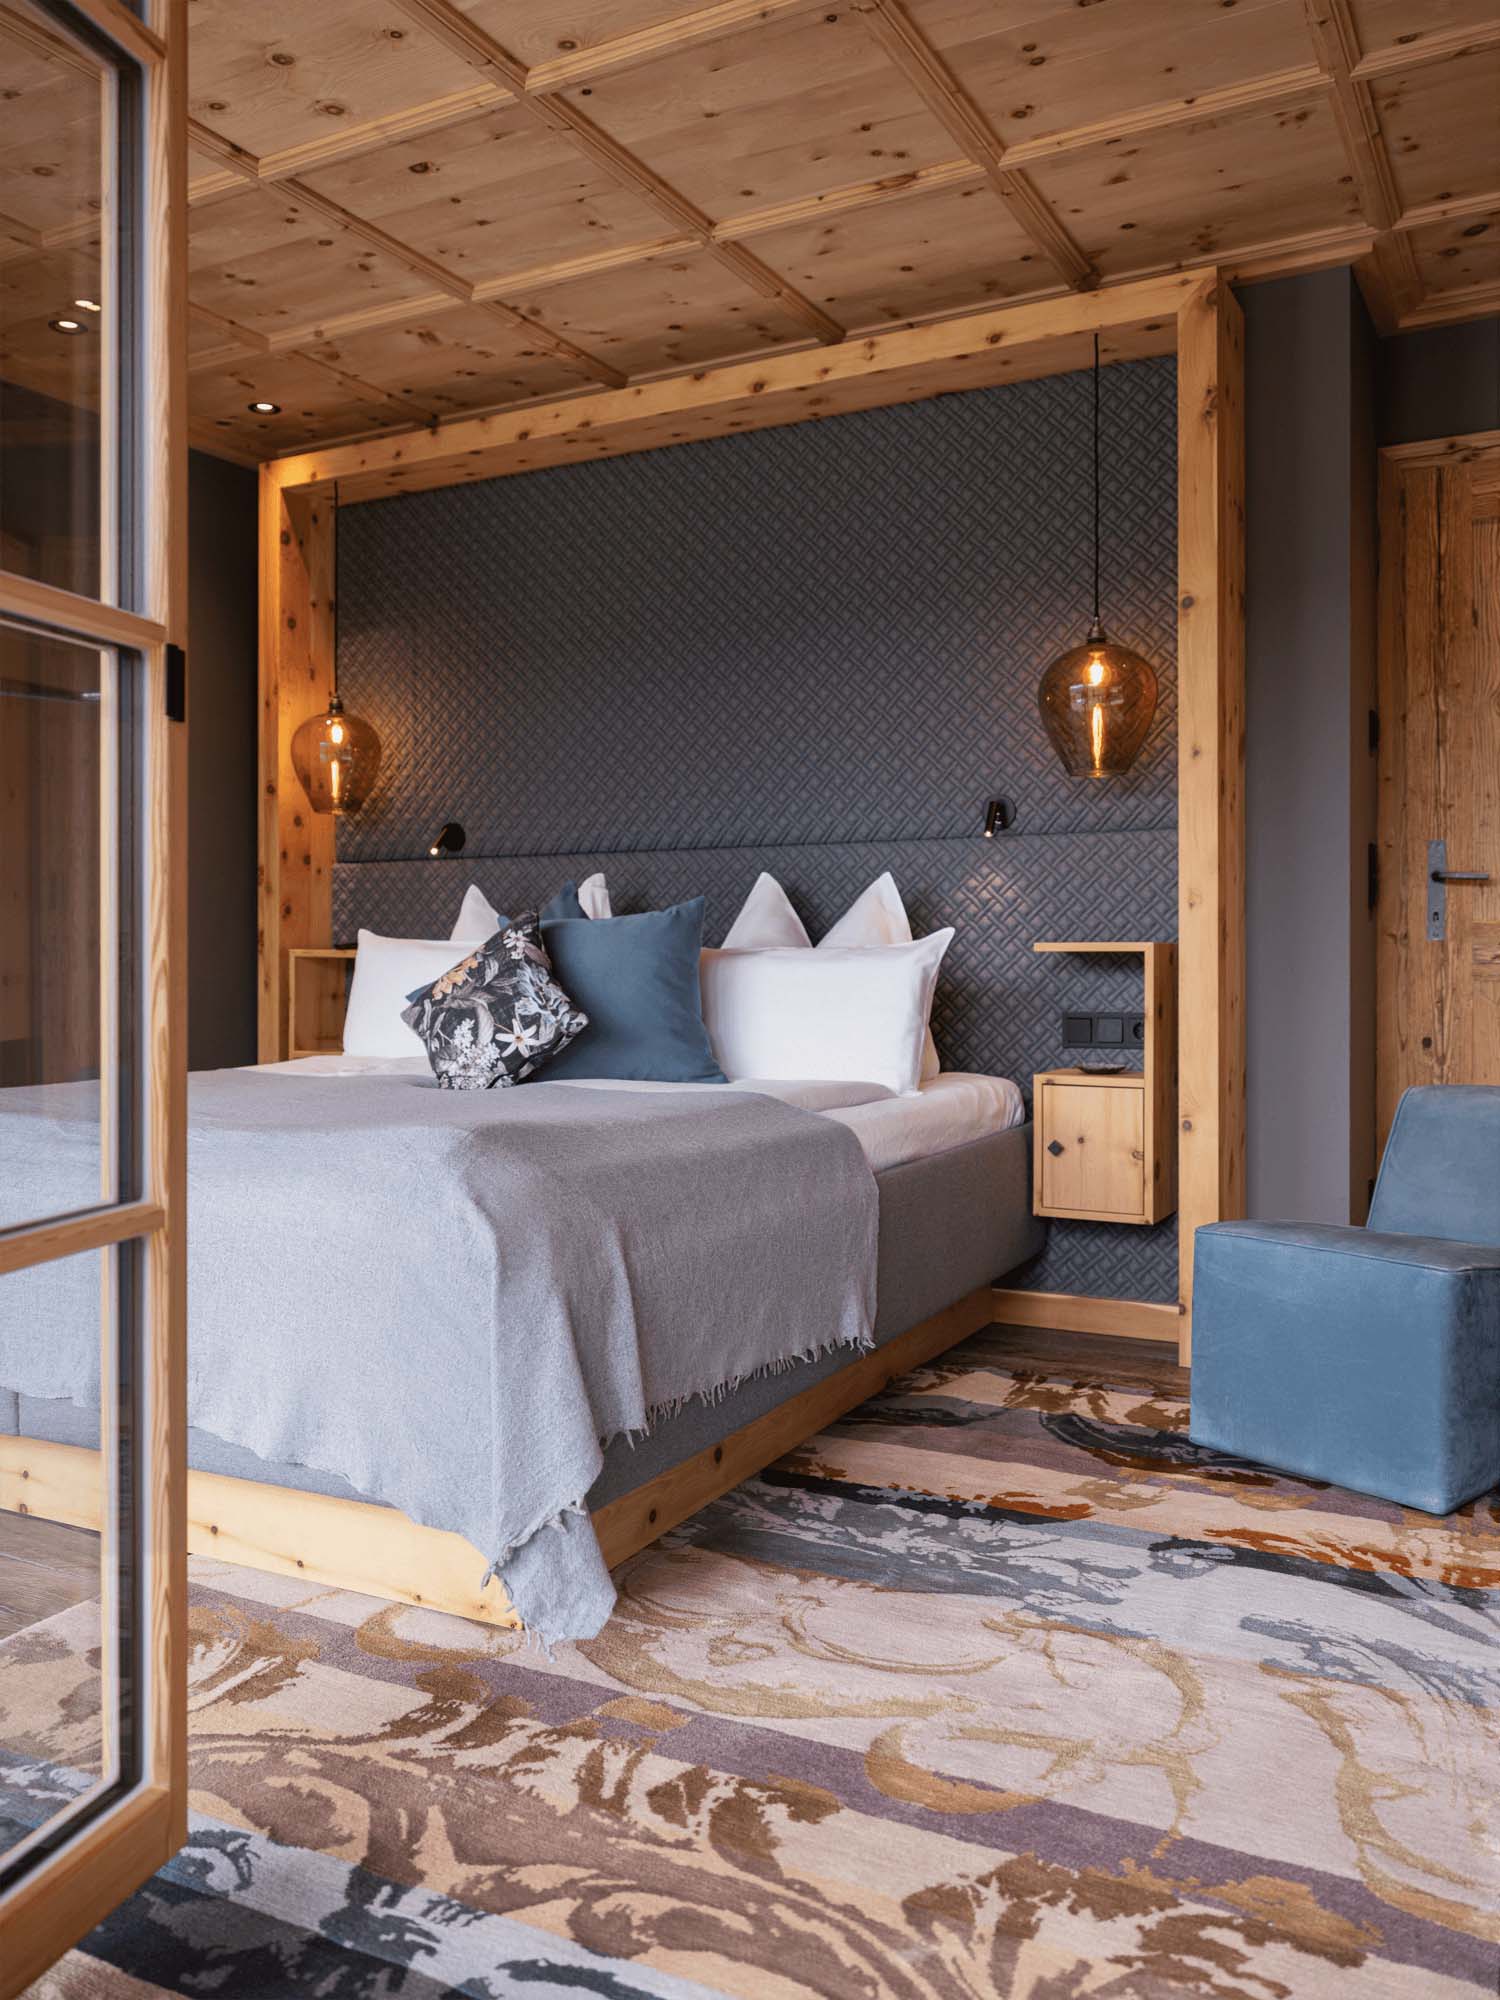 Schlafzimmer mit buntem Teppich Luegg mit floralen Muster - Geba rugs